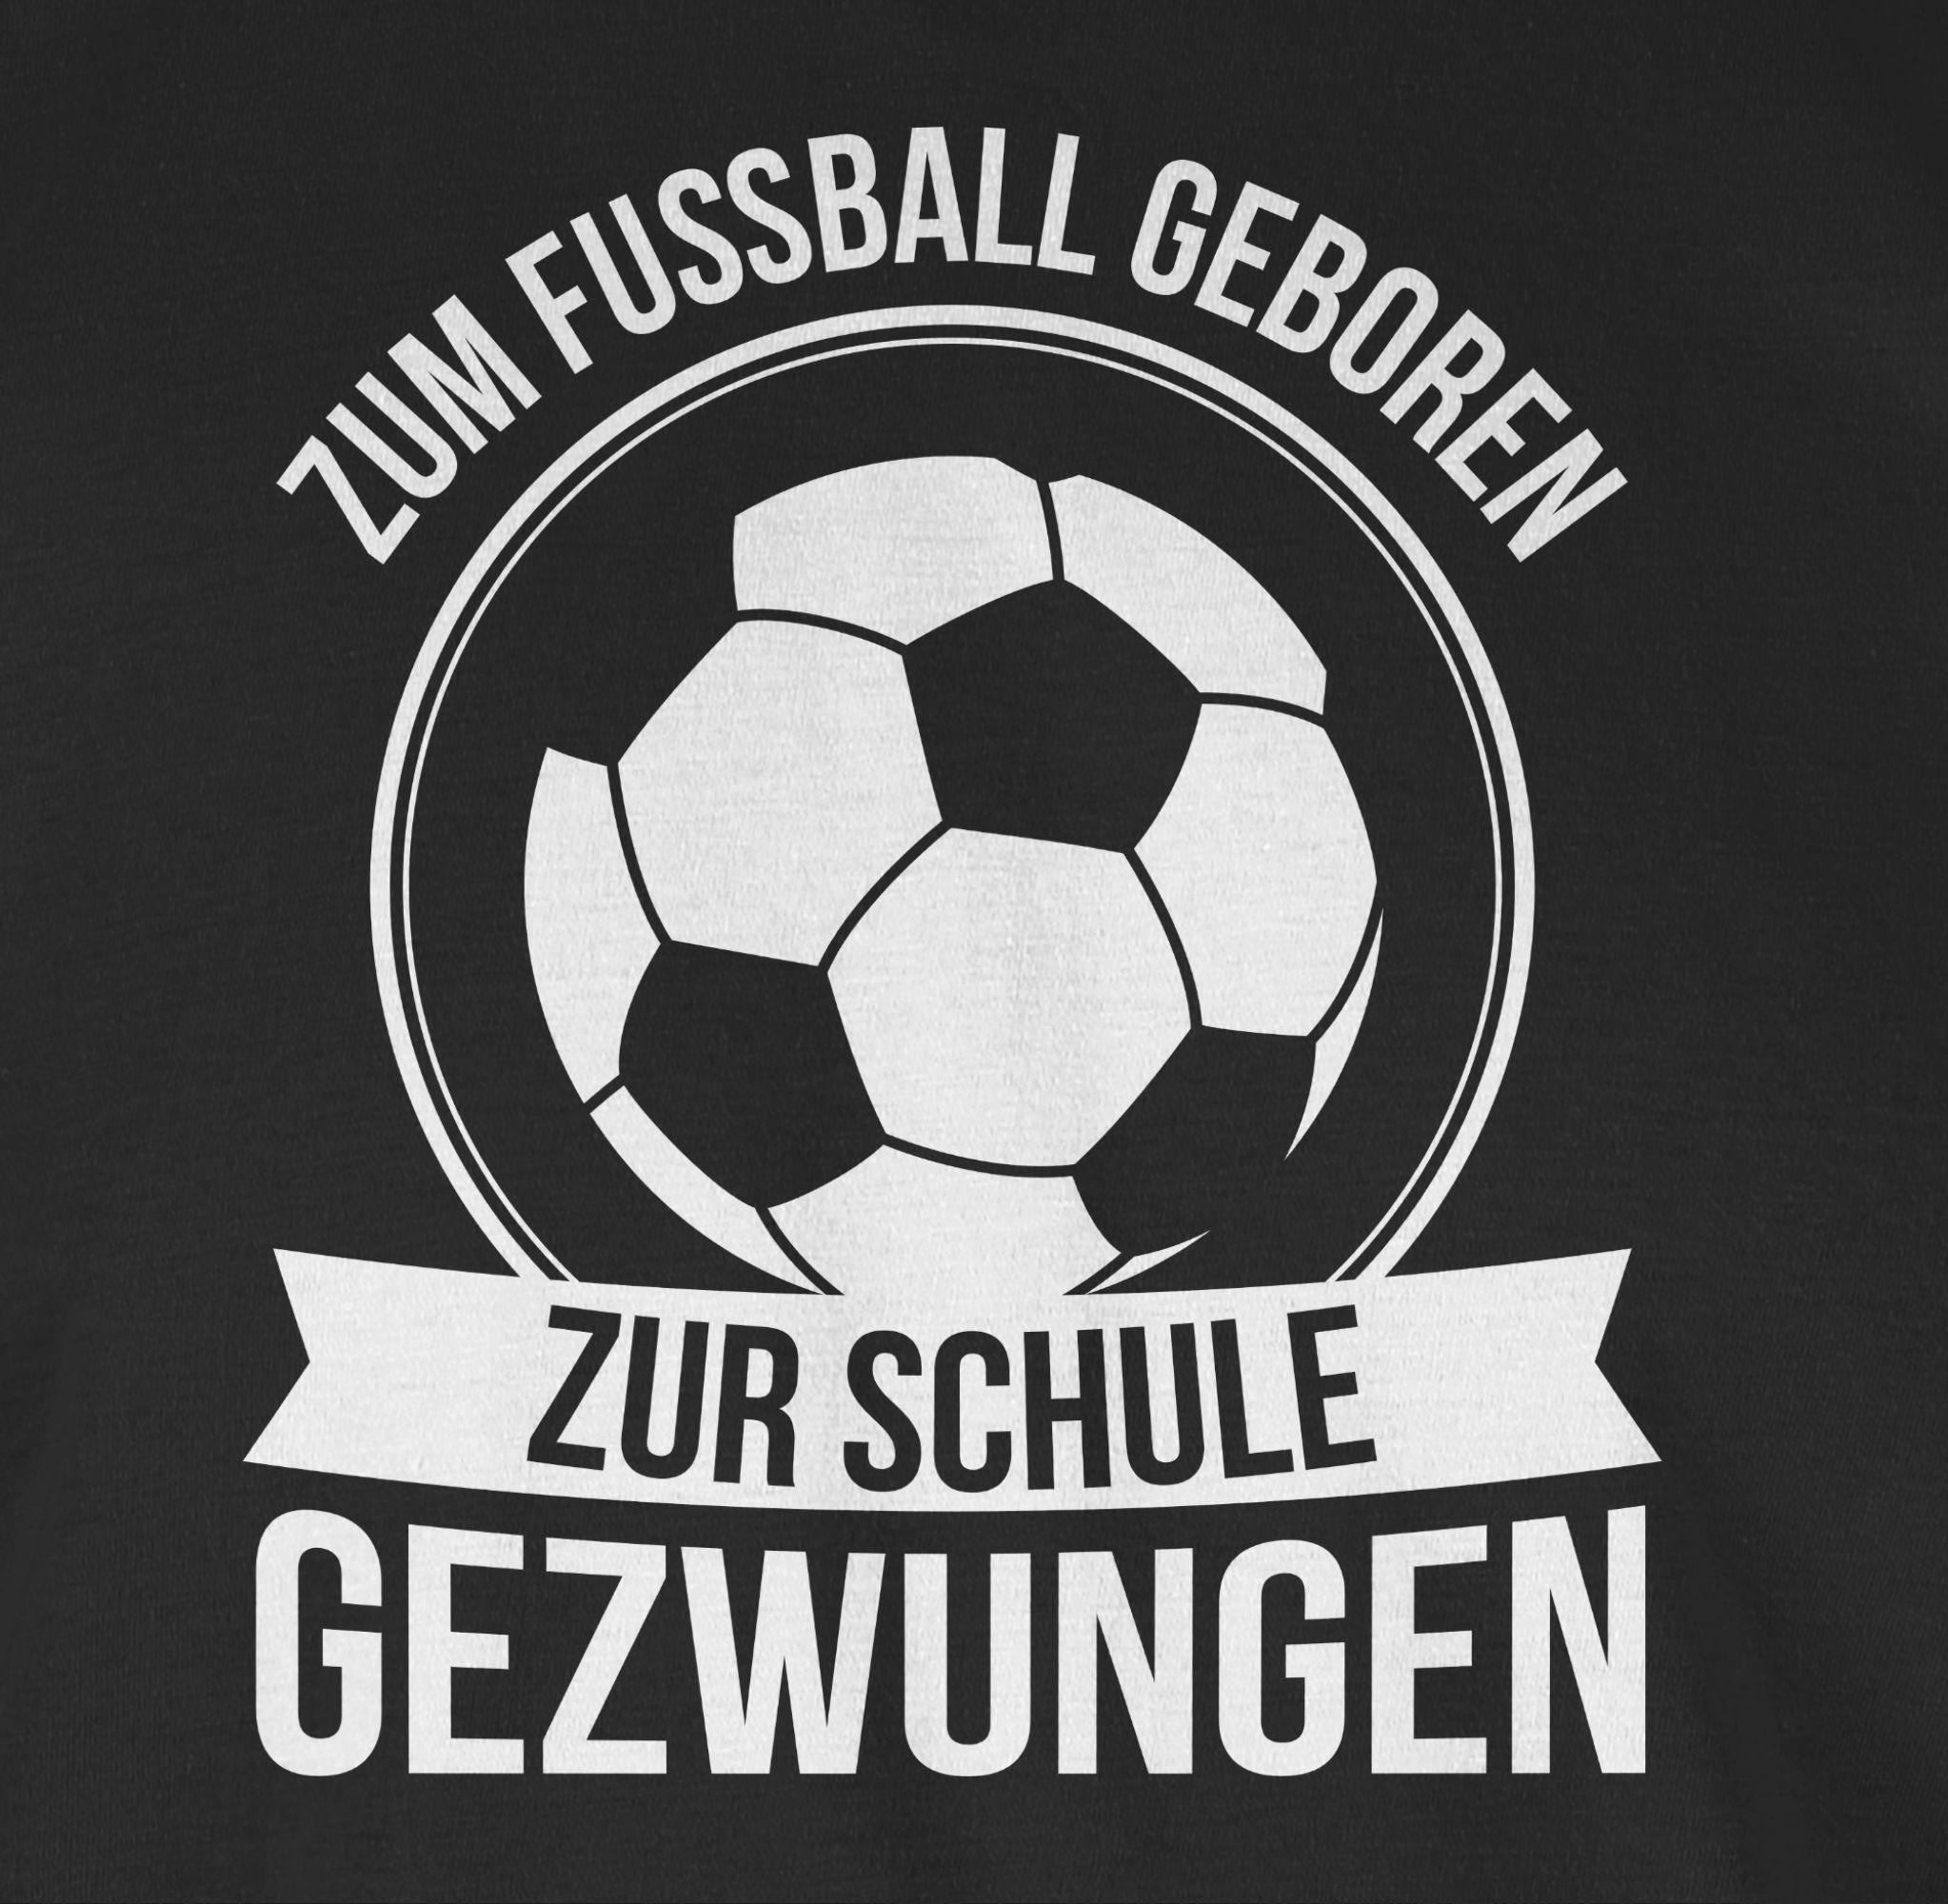 Schwarz Fußball 1 Zum EM geboren Schule Fussball T-Shirt zur 2024 gezwungen Shirtracer